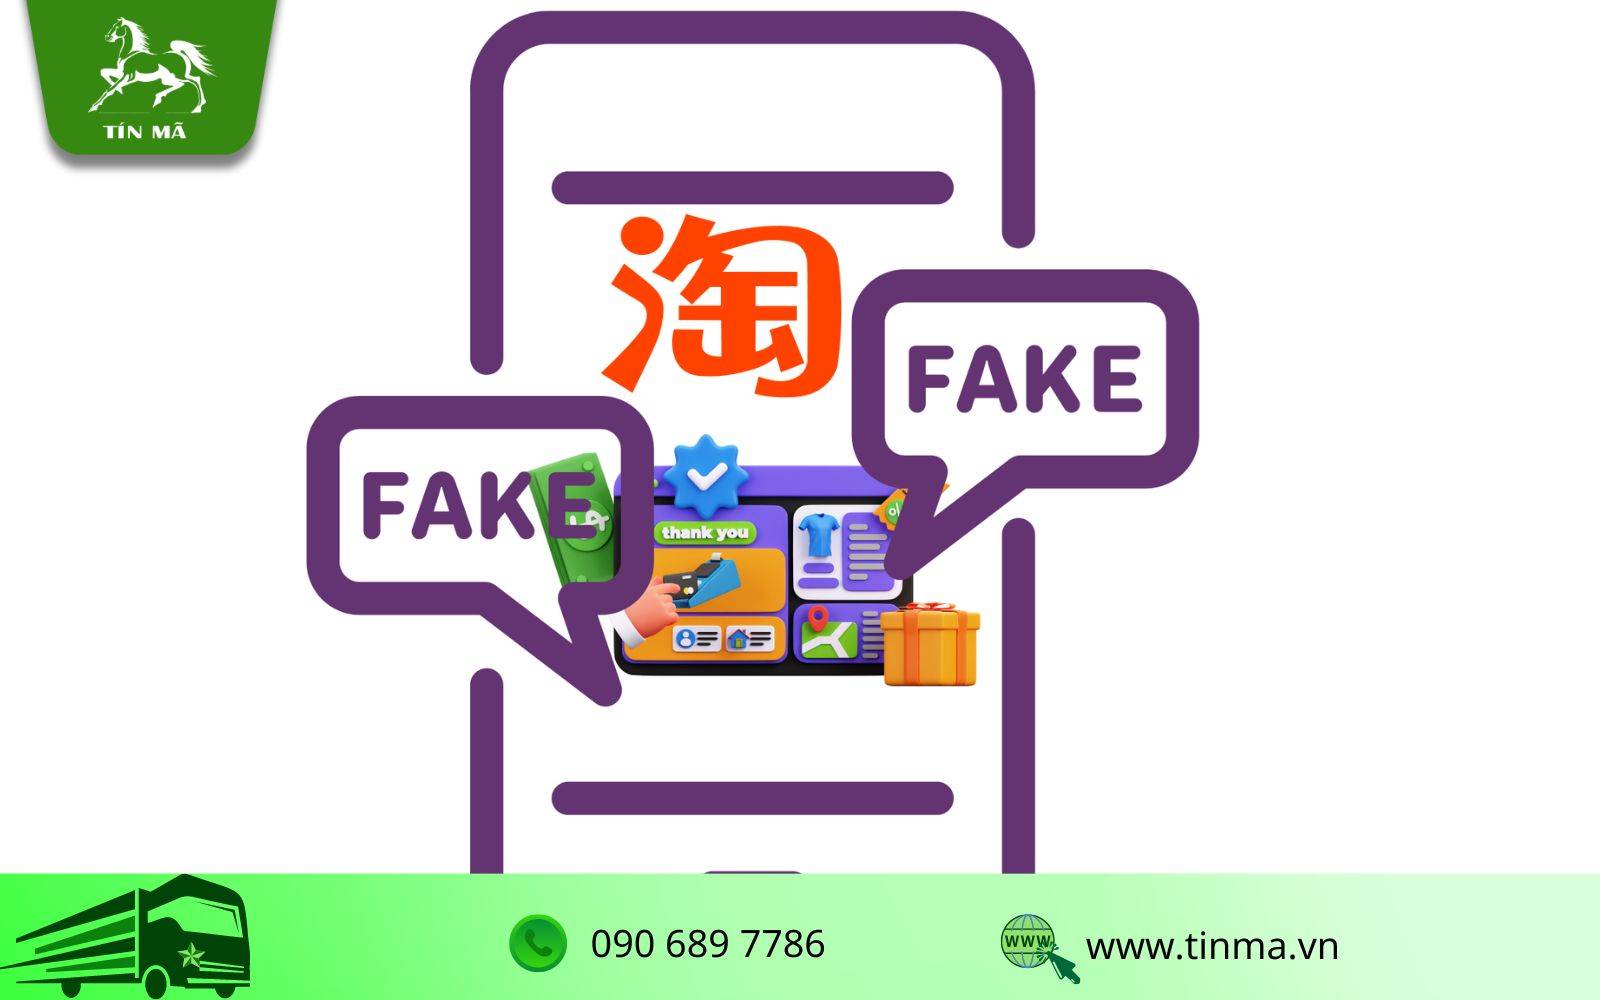 Sử dụng dịch vụ nhập hộ hàng hóa Taobao sẽ khắc phục được rủi ro nhập hàng giả